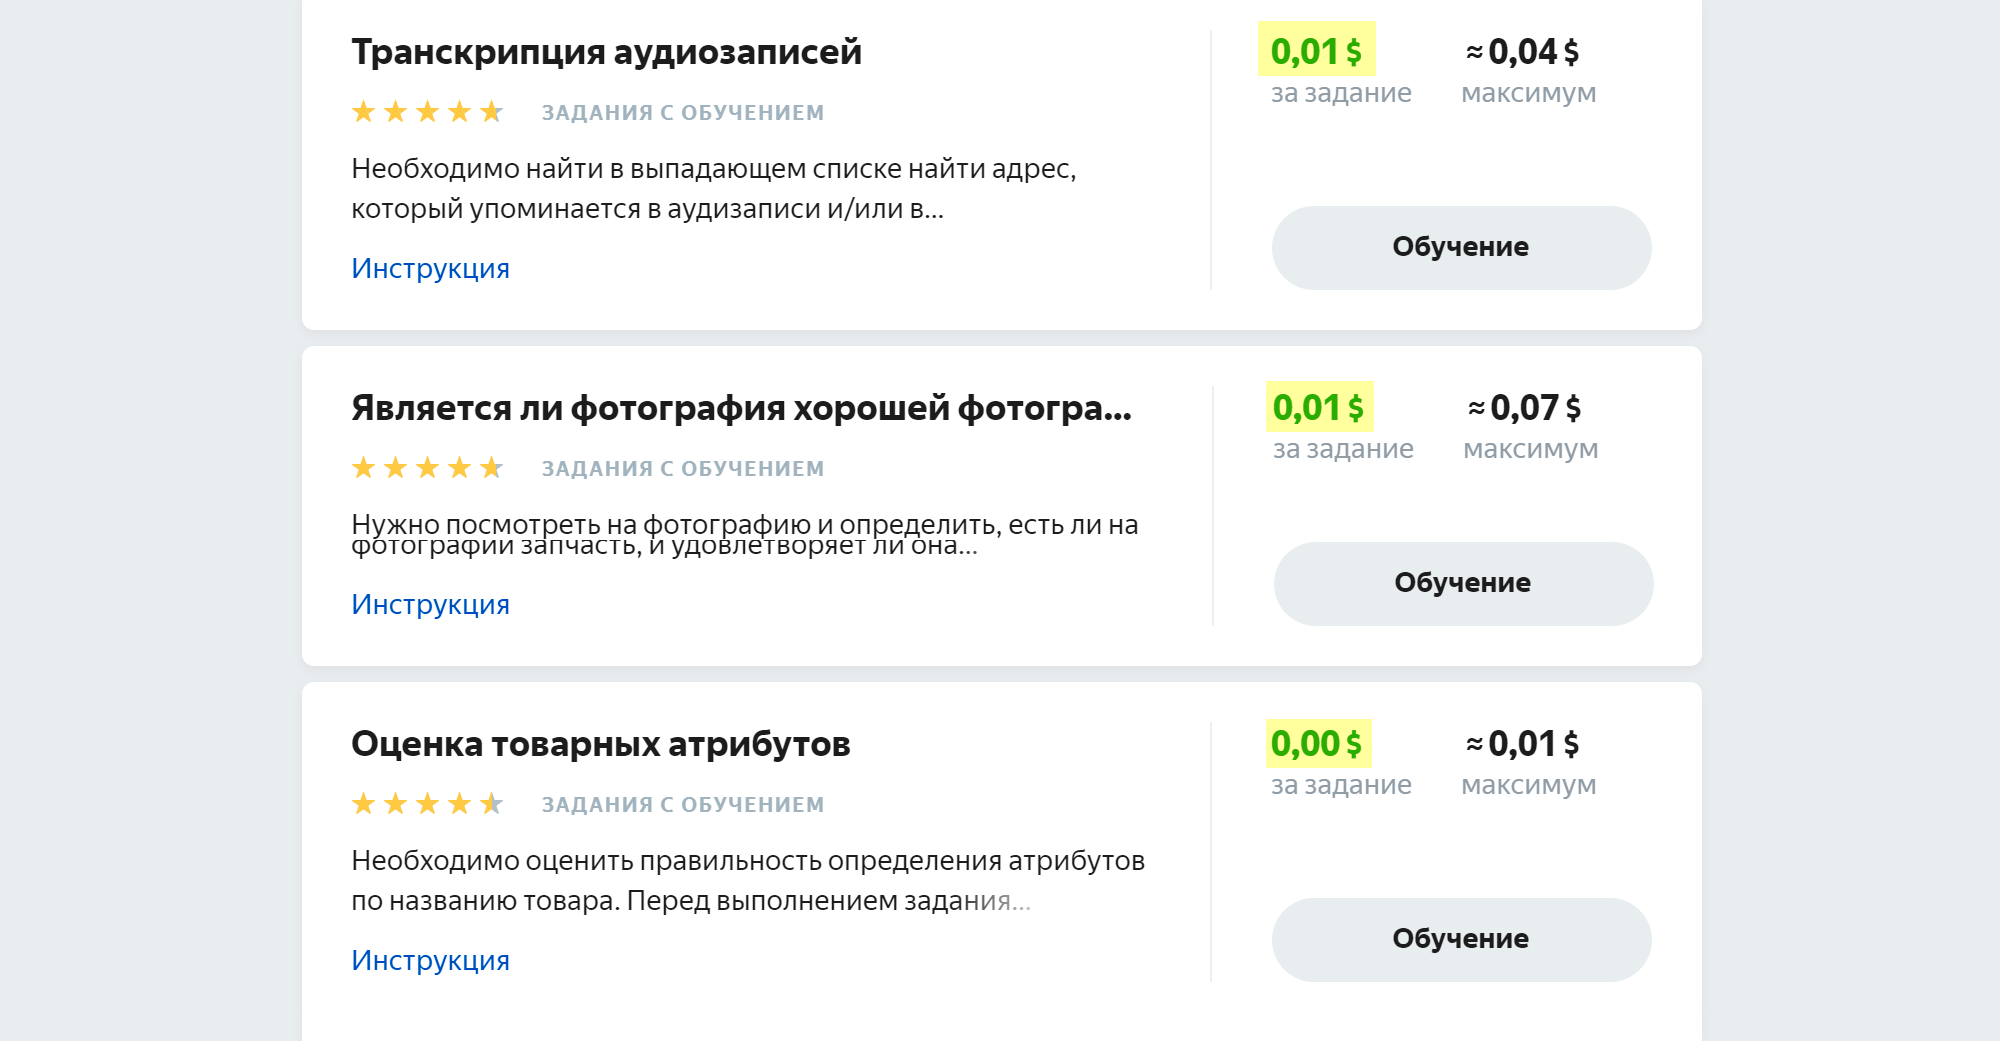 За оценку рекламных объявлений редко платят больше 1 цента (0,63 рубля)